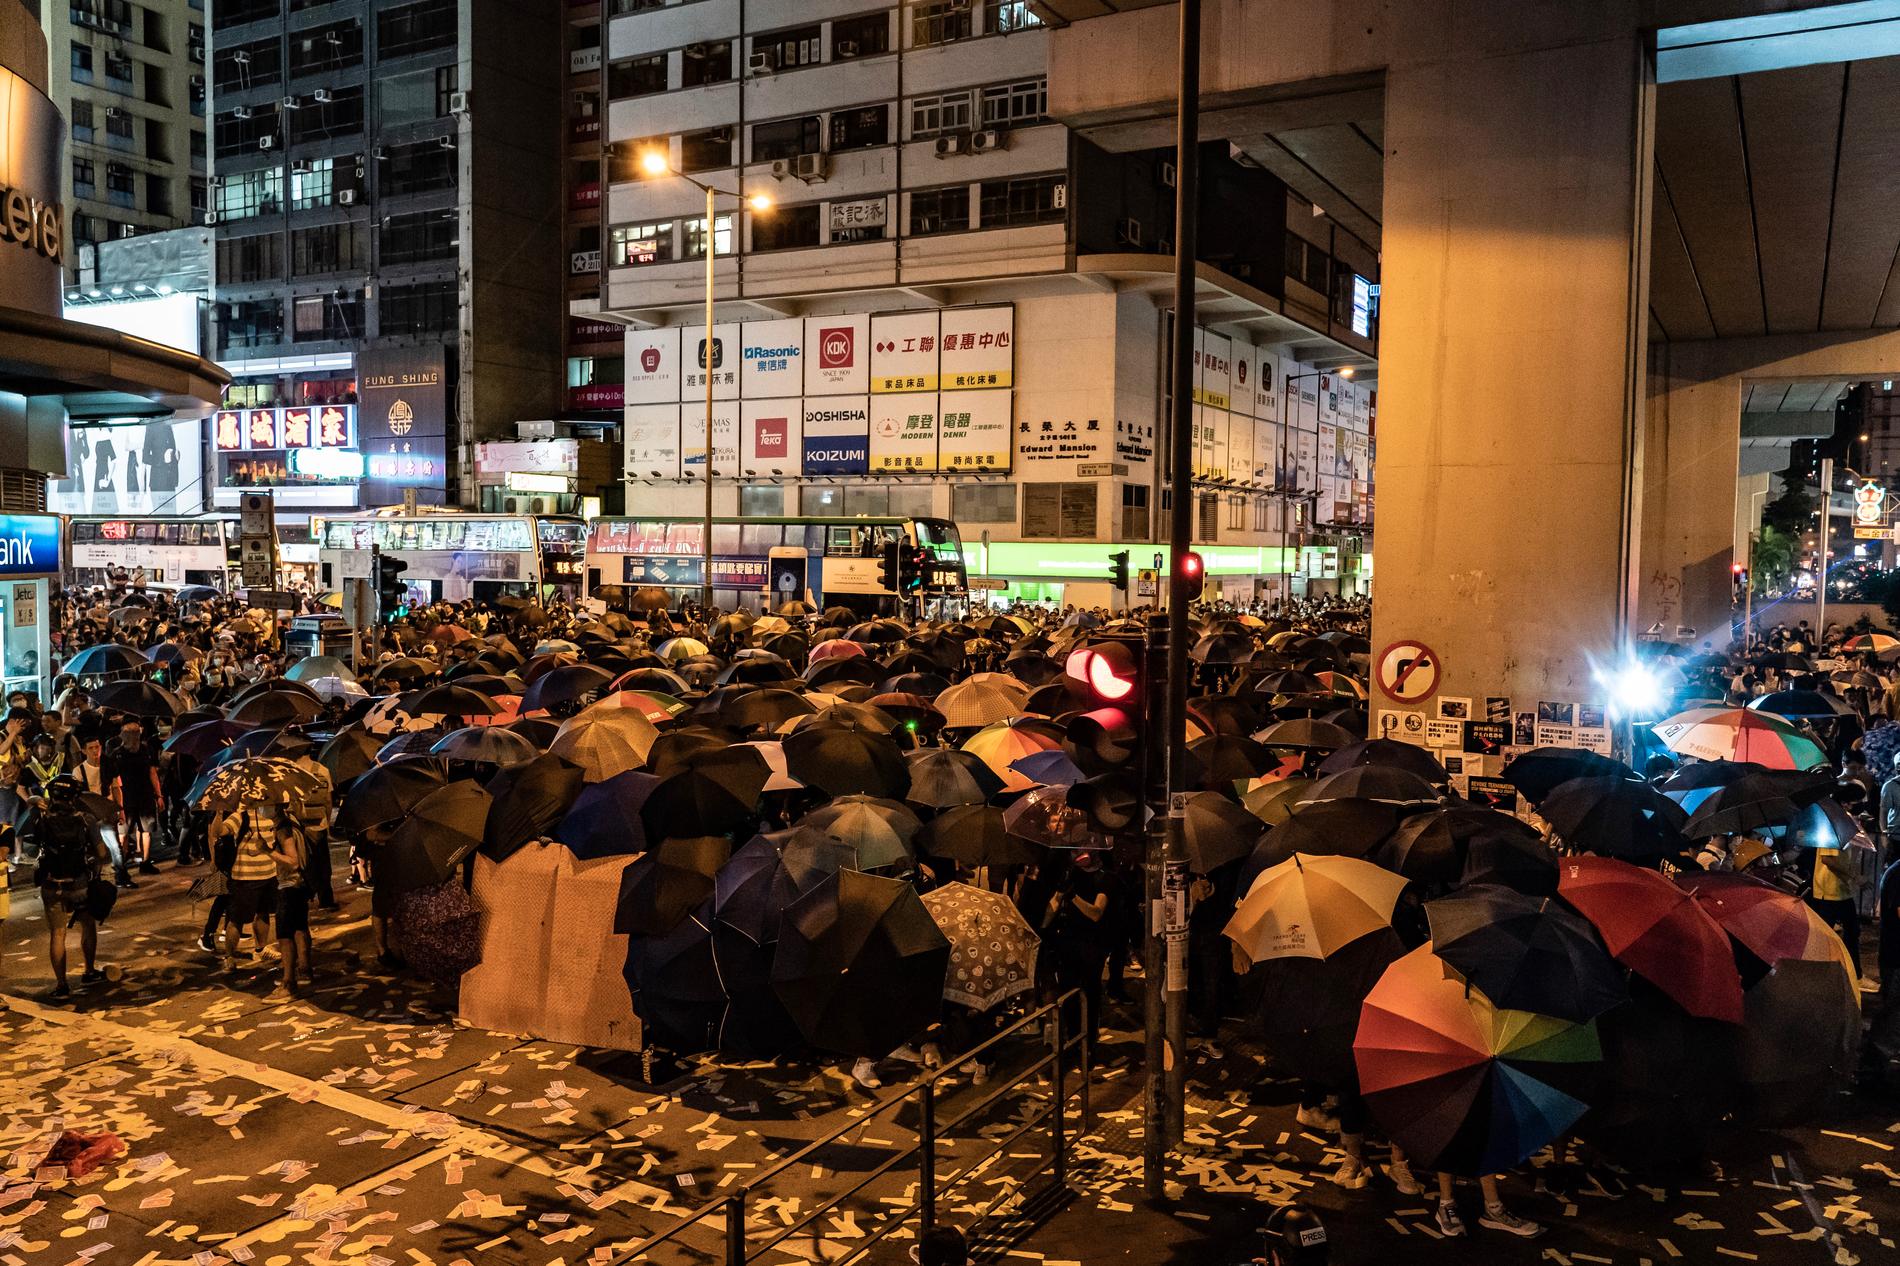 Demonstranter förbereder sig för polisens reaktion utanför Mongkoks polisstation.